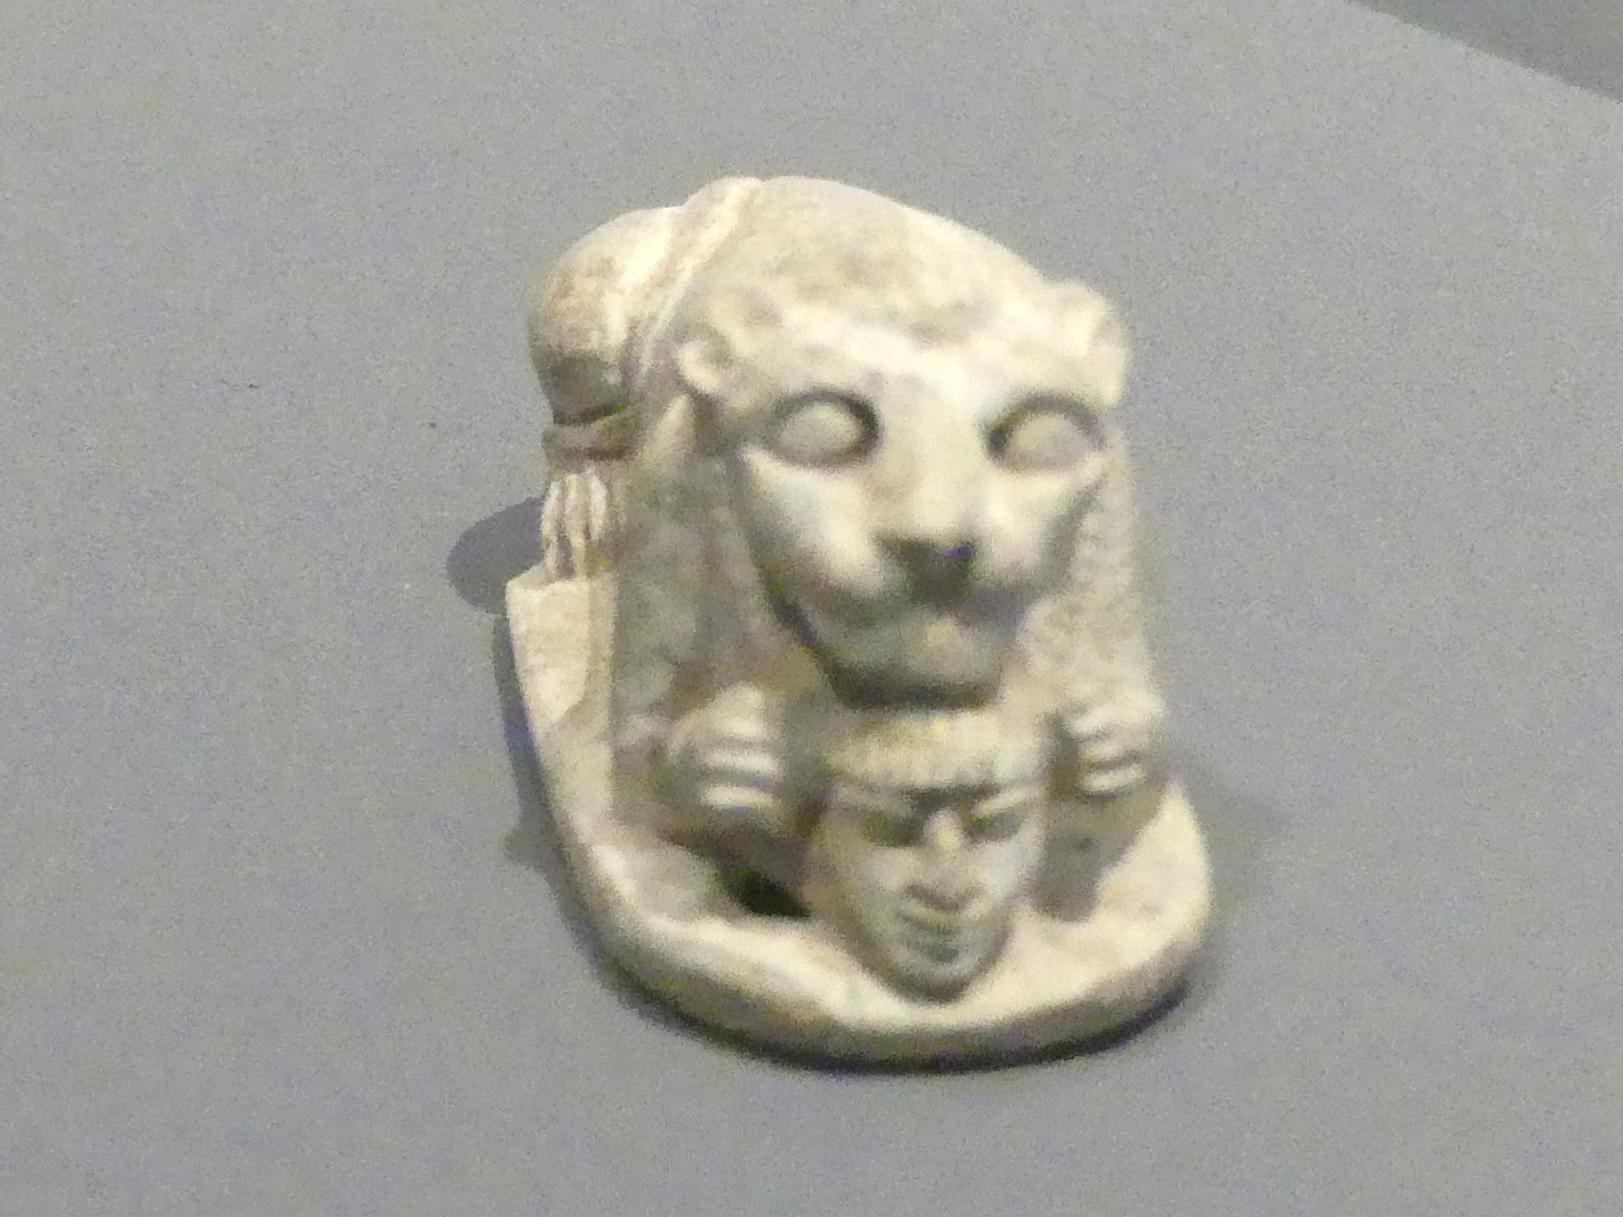 Statuette eines liegenden Löwen mit dem Kopf eines Gefangenen zwischen den Tatzen, Neues Reich, 953 - 887 v. Chr., 1250 - 1100 v. Chr., Bild 2/3